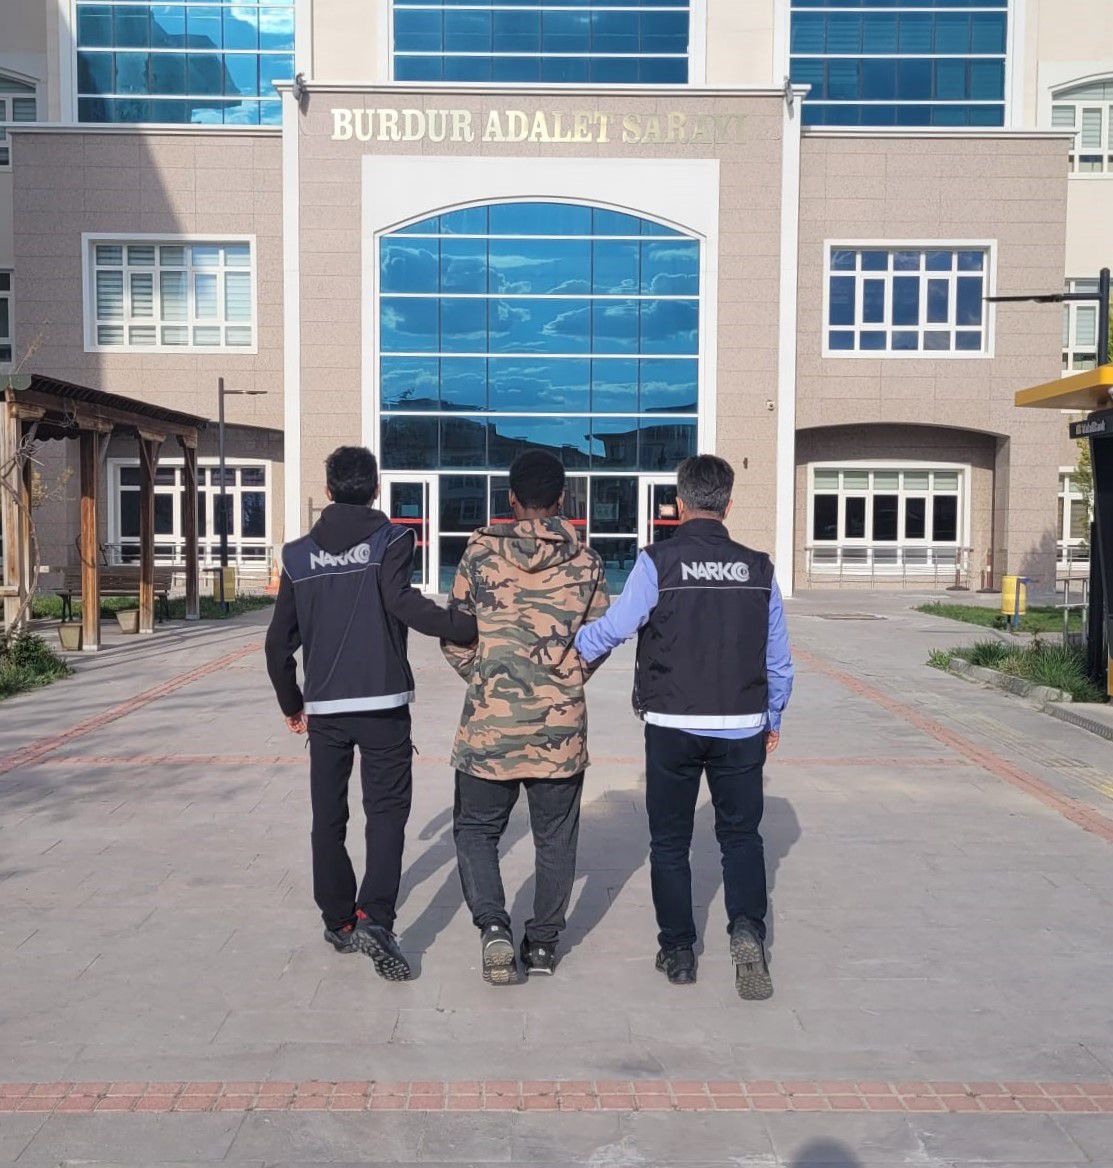 Burdur'da 3 Kişi Yakalandı 2'Si Cezaevine Gönderildi! (1)